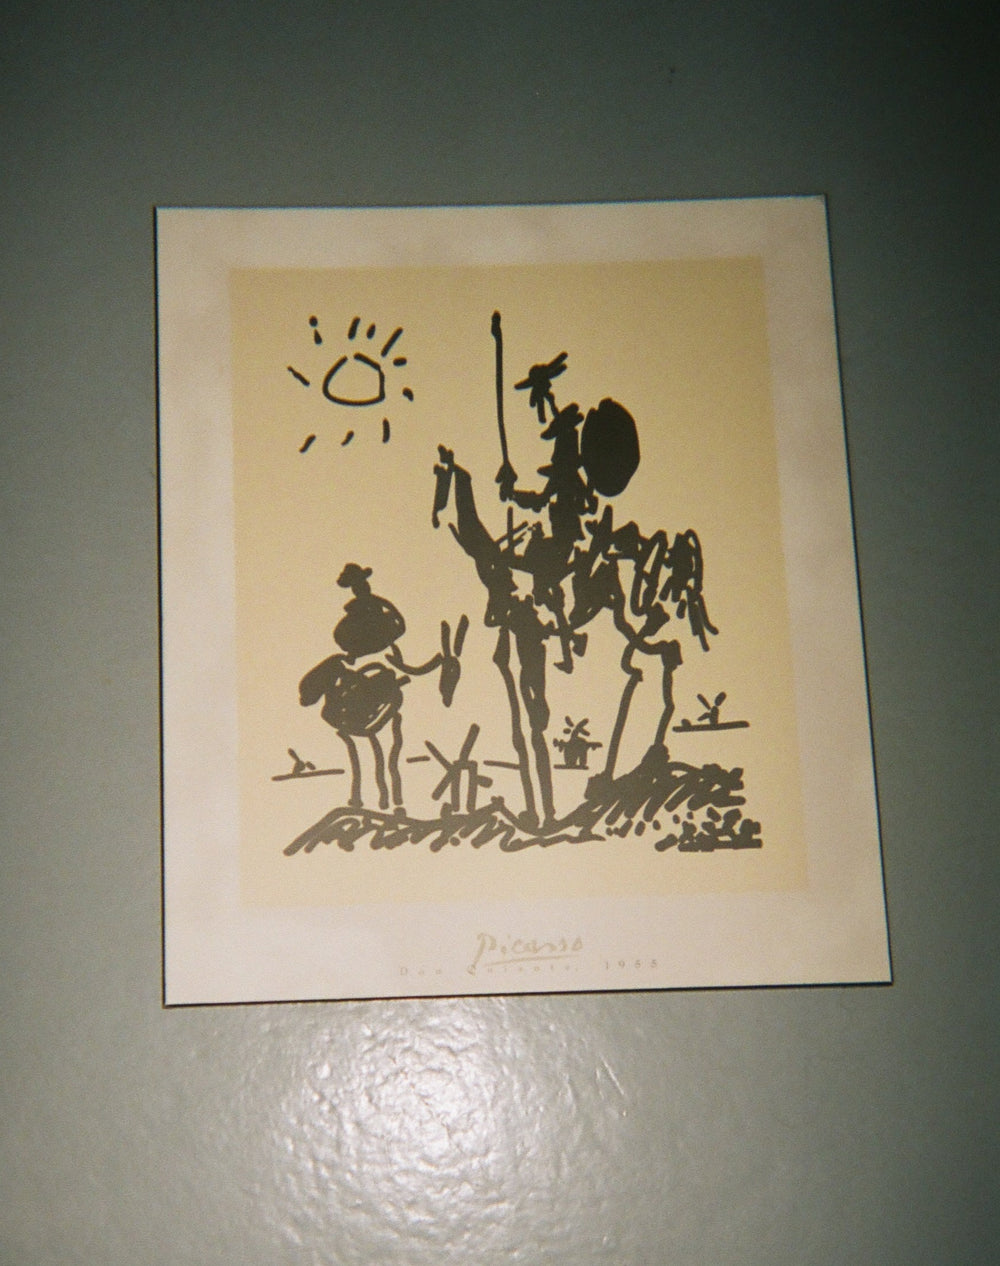 Picasso’s “ Don Quixote” Laminated print